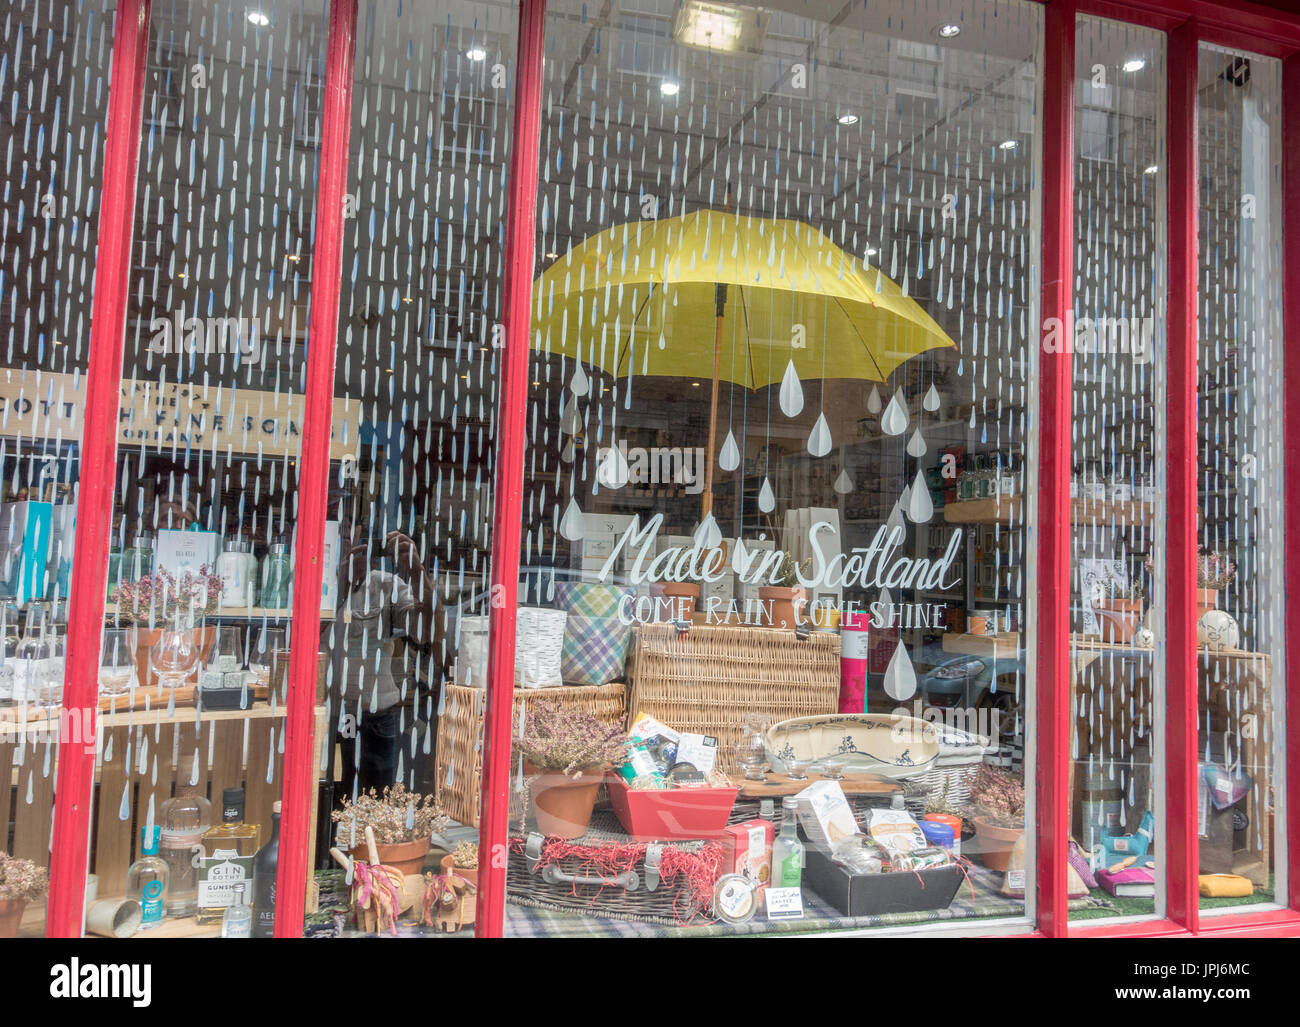 Tienda de venta de alimentos realizados en Escocia y tienda escaparate Canongate la Royal Mile de Edimburgo Foto de stock